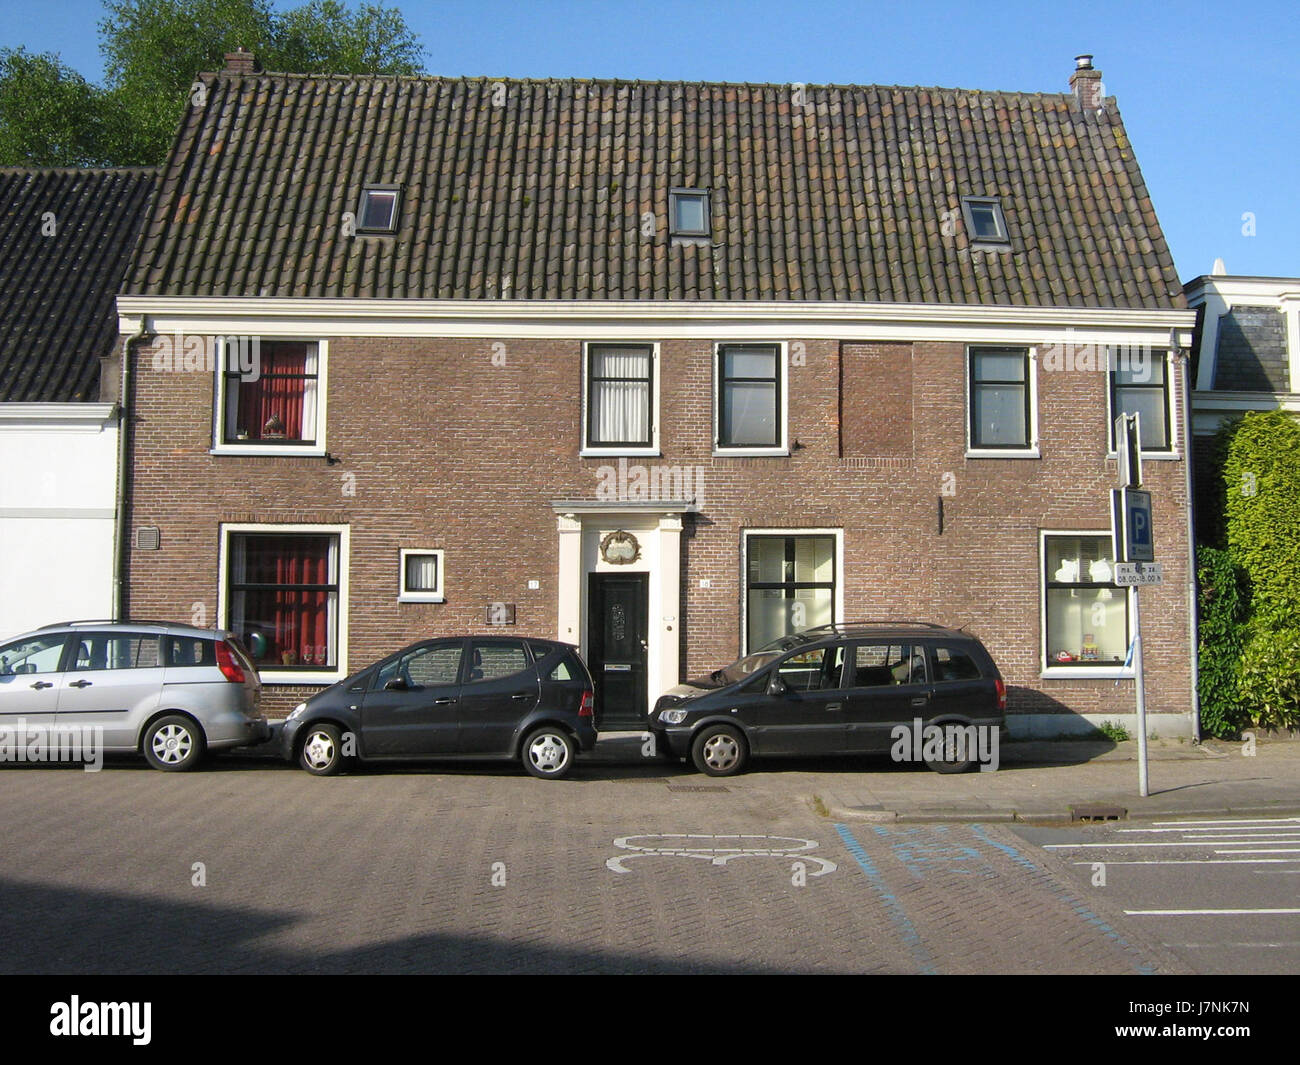 17 18 Hoger Einde Zuid Ouderkerk aan de Amstel Netherlands Stock Photo